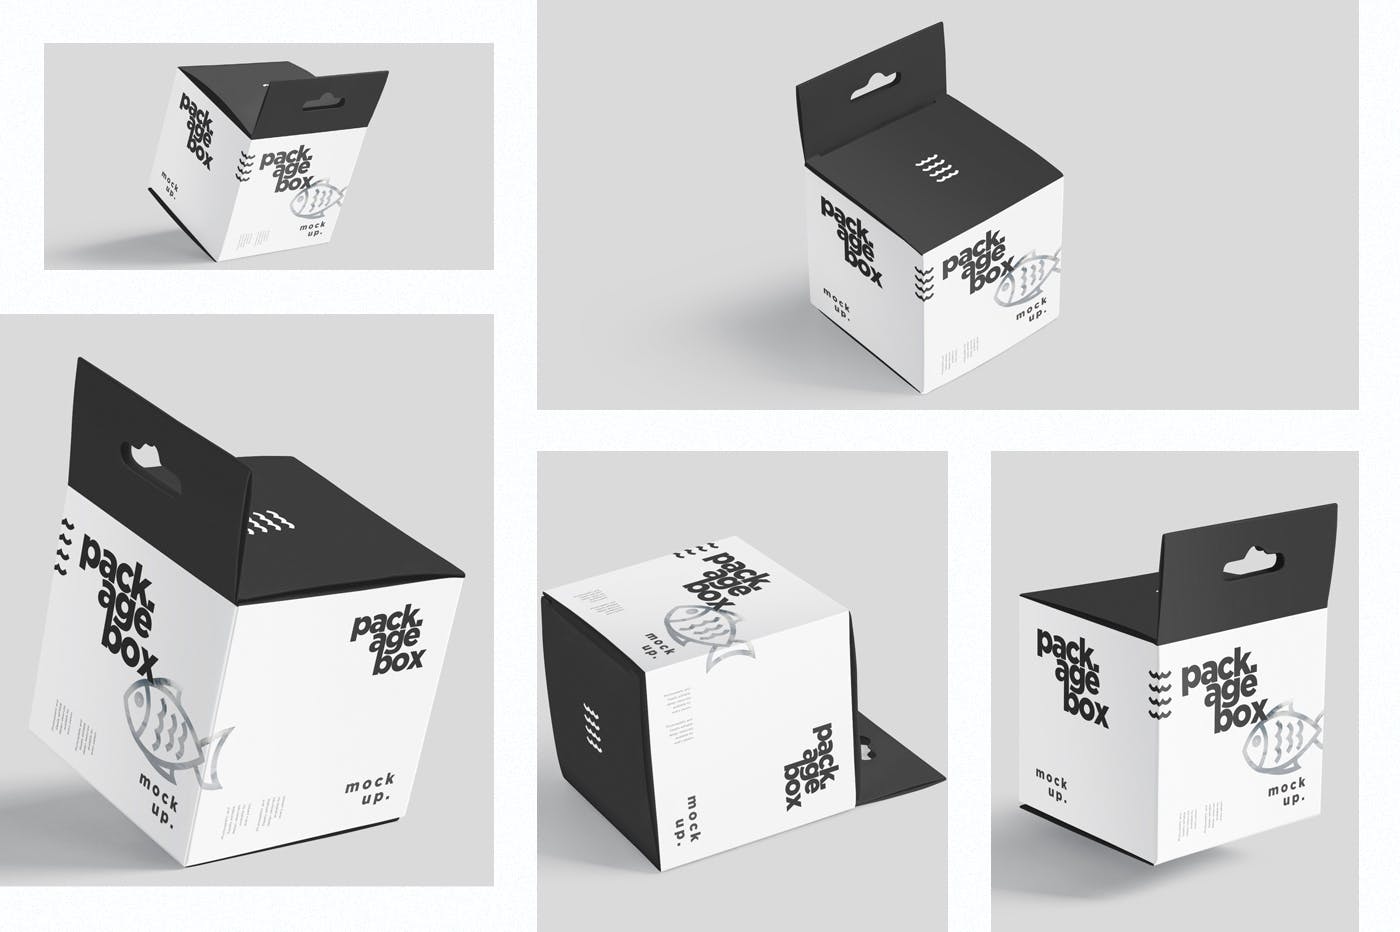 挂耳式方形产品包装盒样机模板 Package Box Mockup Set – Square With Hanger插图(1)